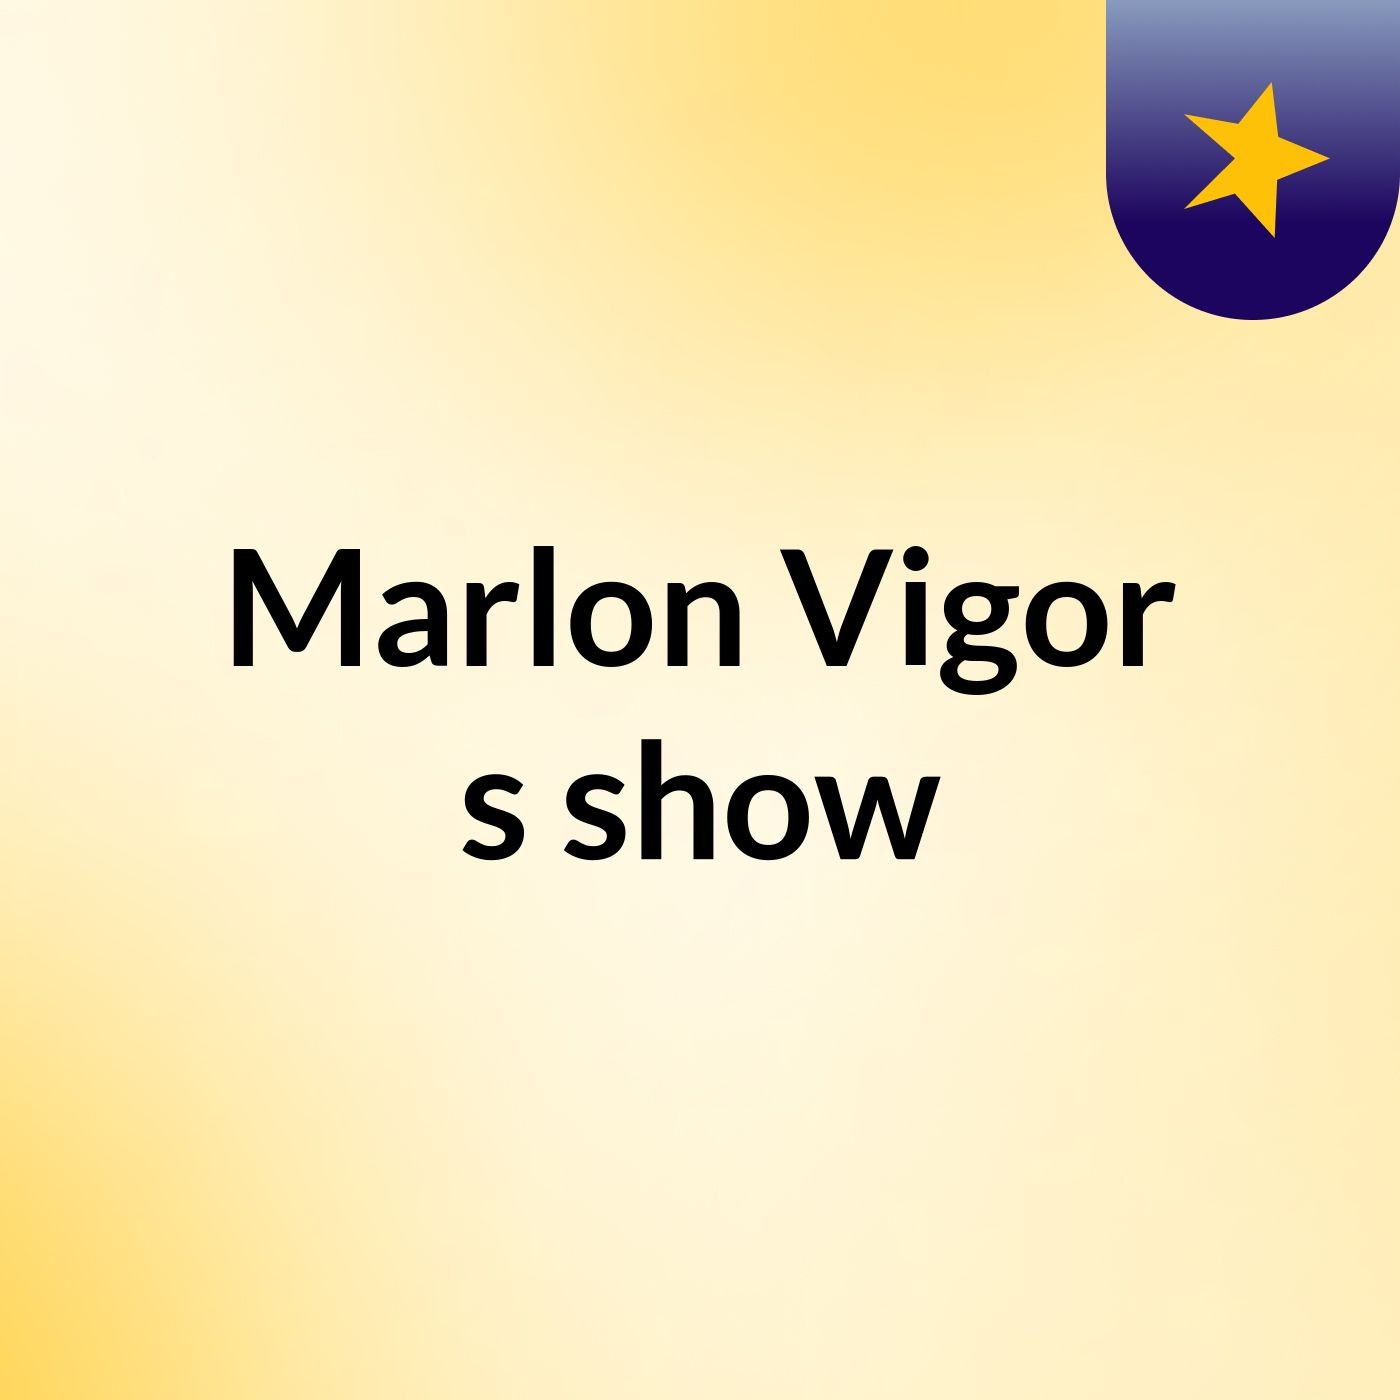 Marlon Vigor's show